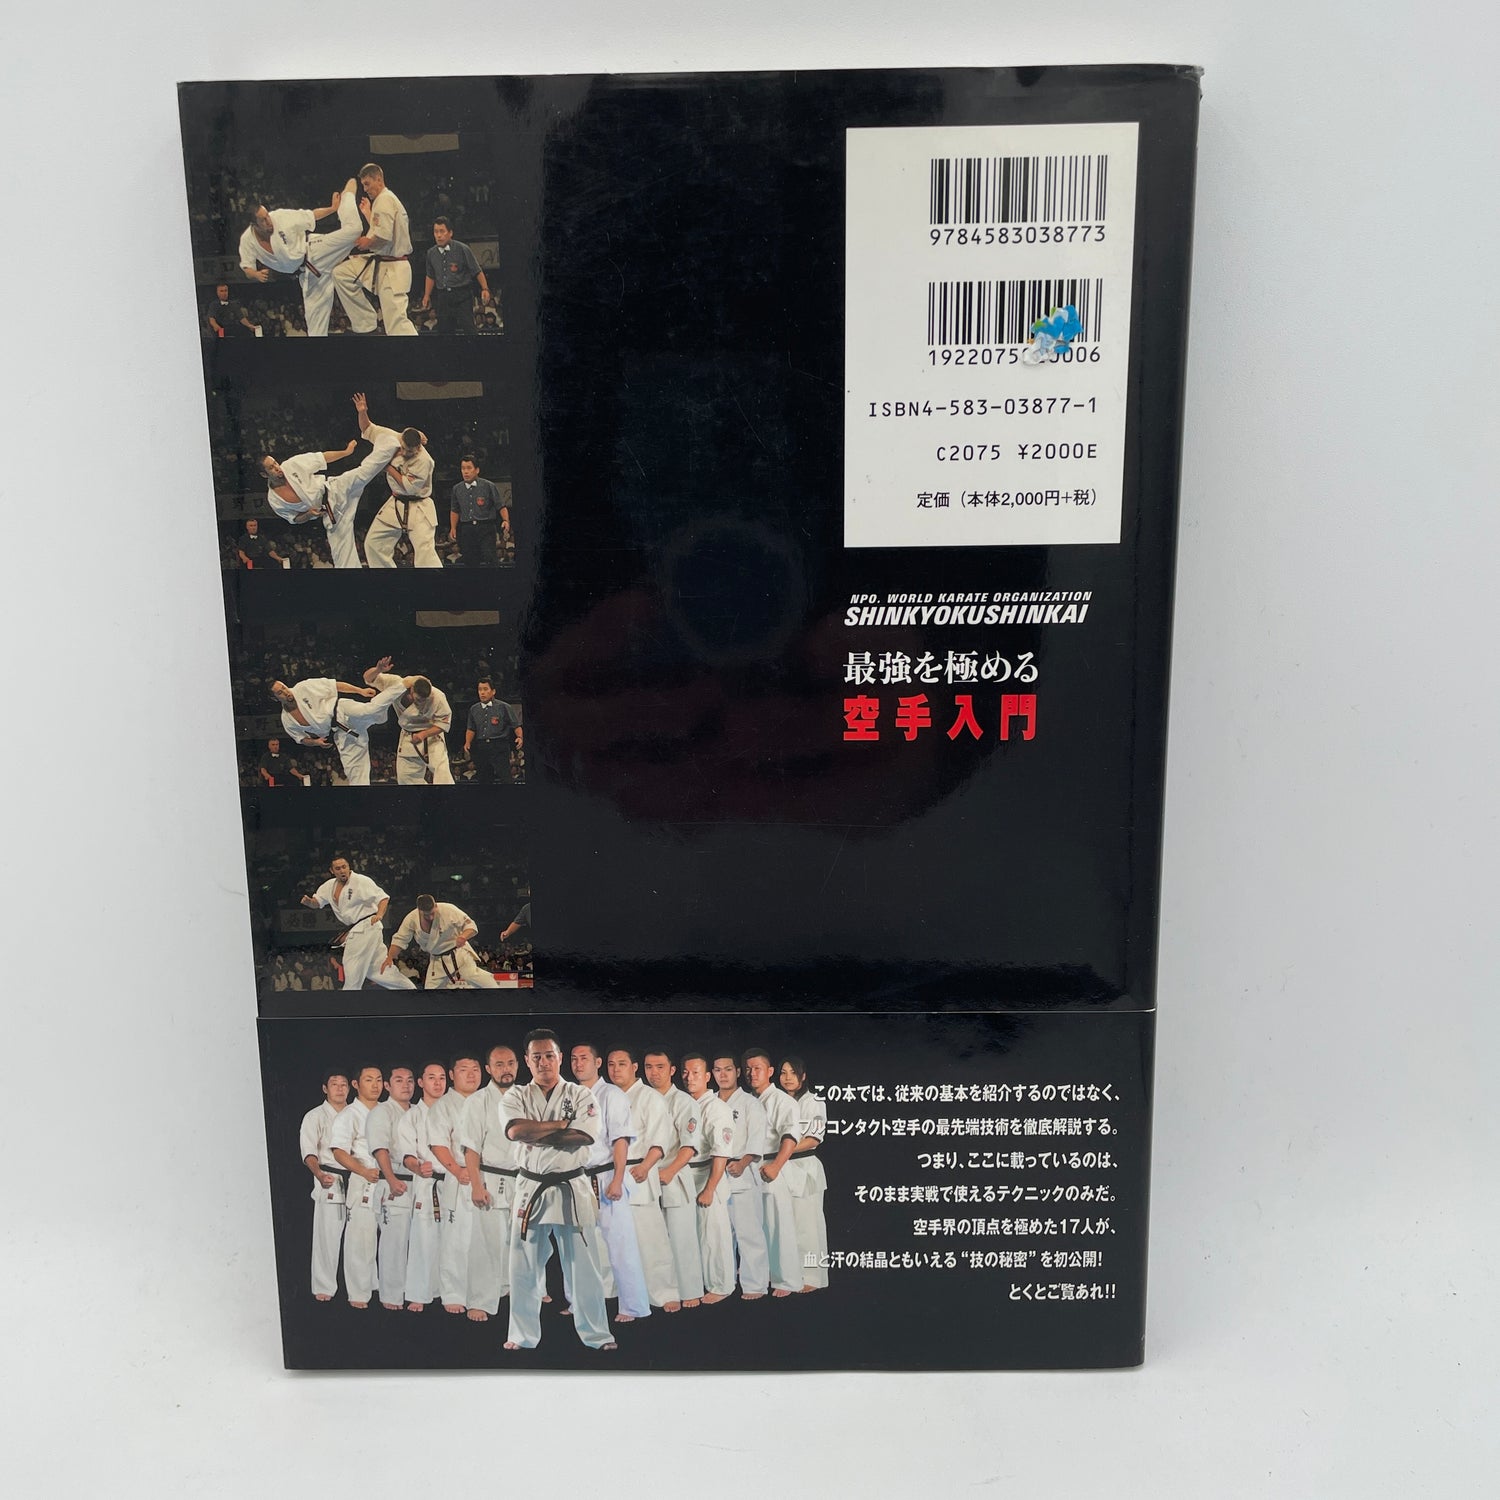 Introducción al libro de karate Shinkyokushinkai de contacto completo más fuerte de Kenji Midori (usado)